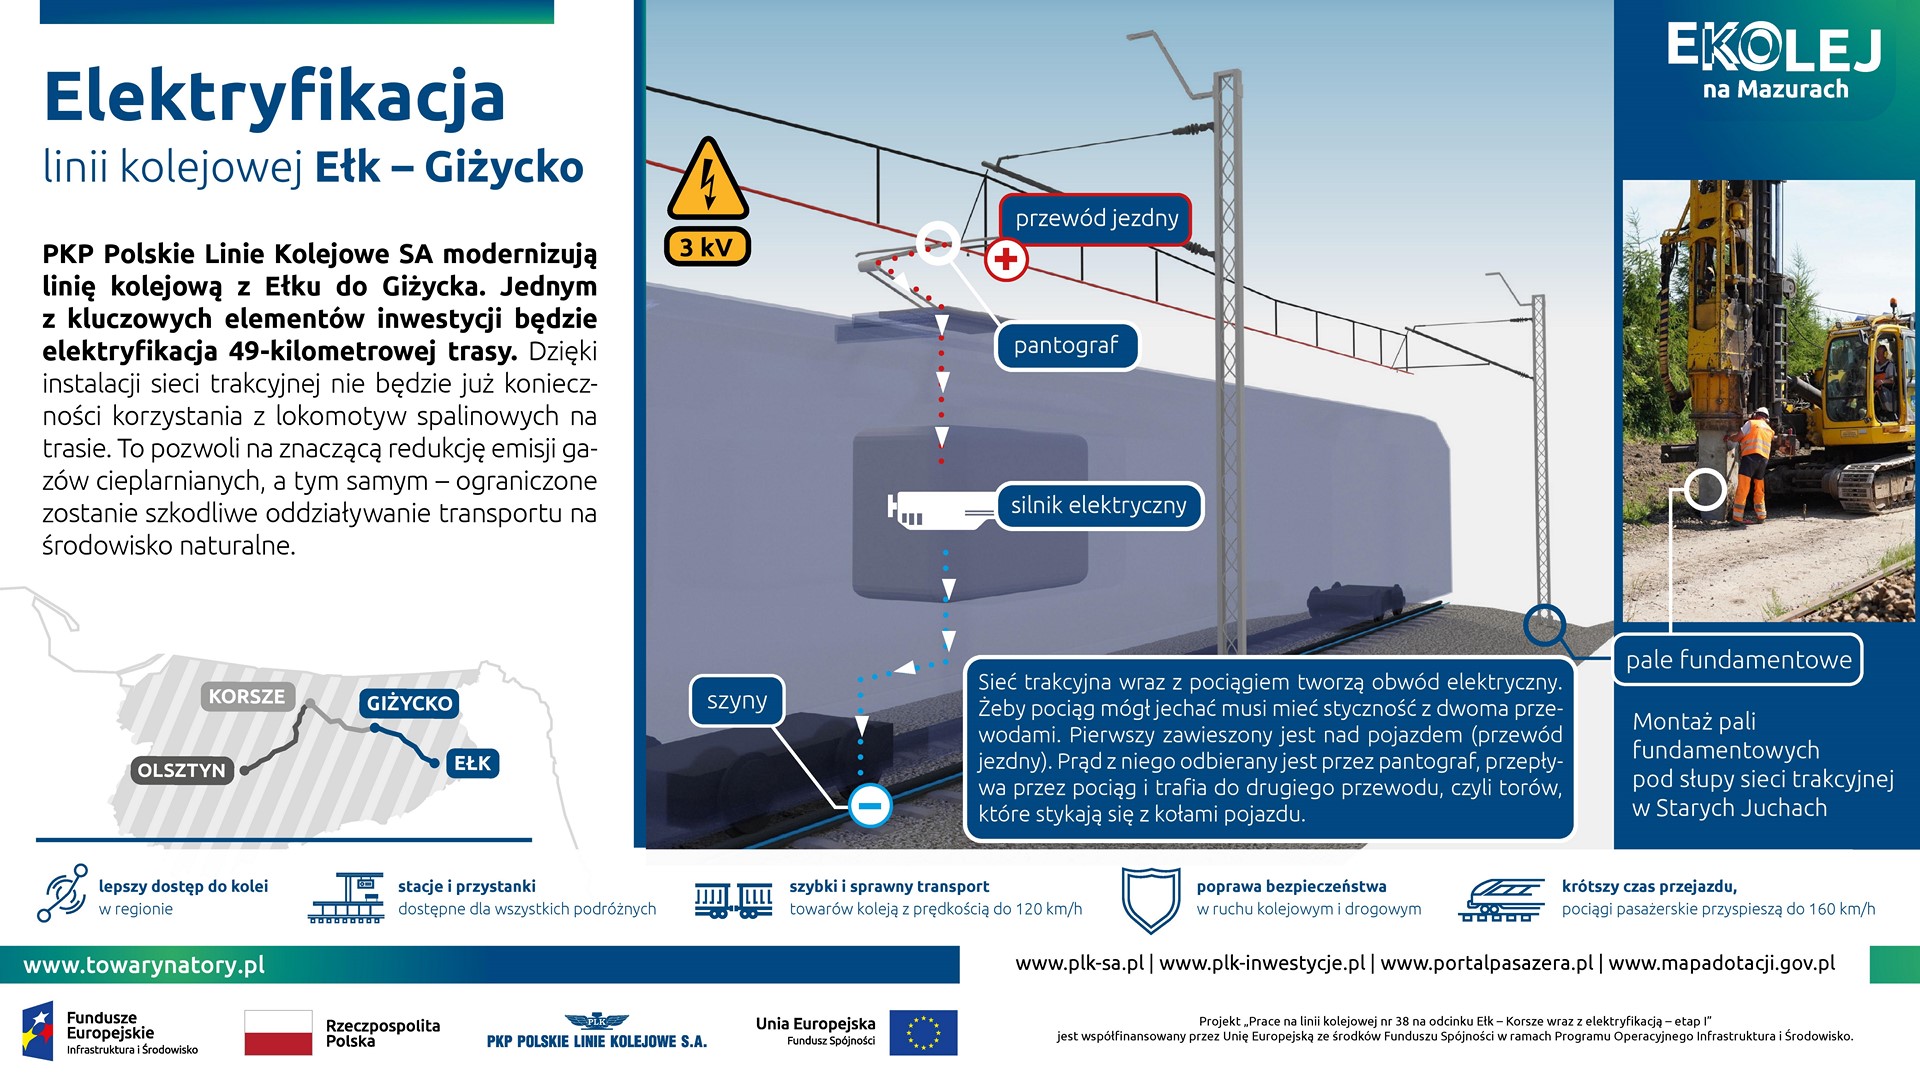 Infografika: przedstawia elektryfikację linii kolejowej Ełk – Giżycko.